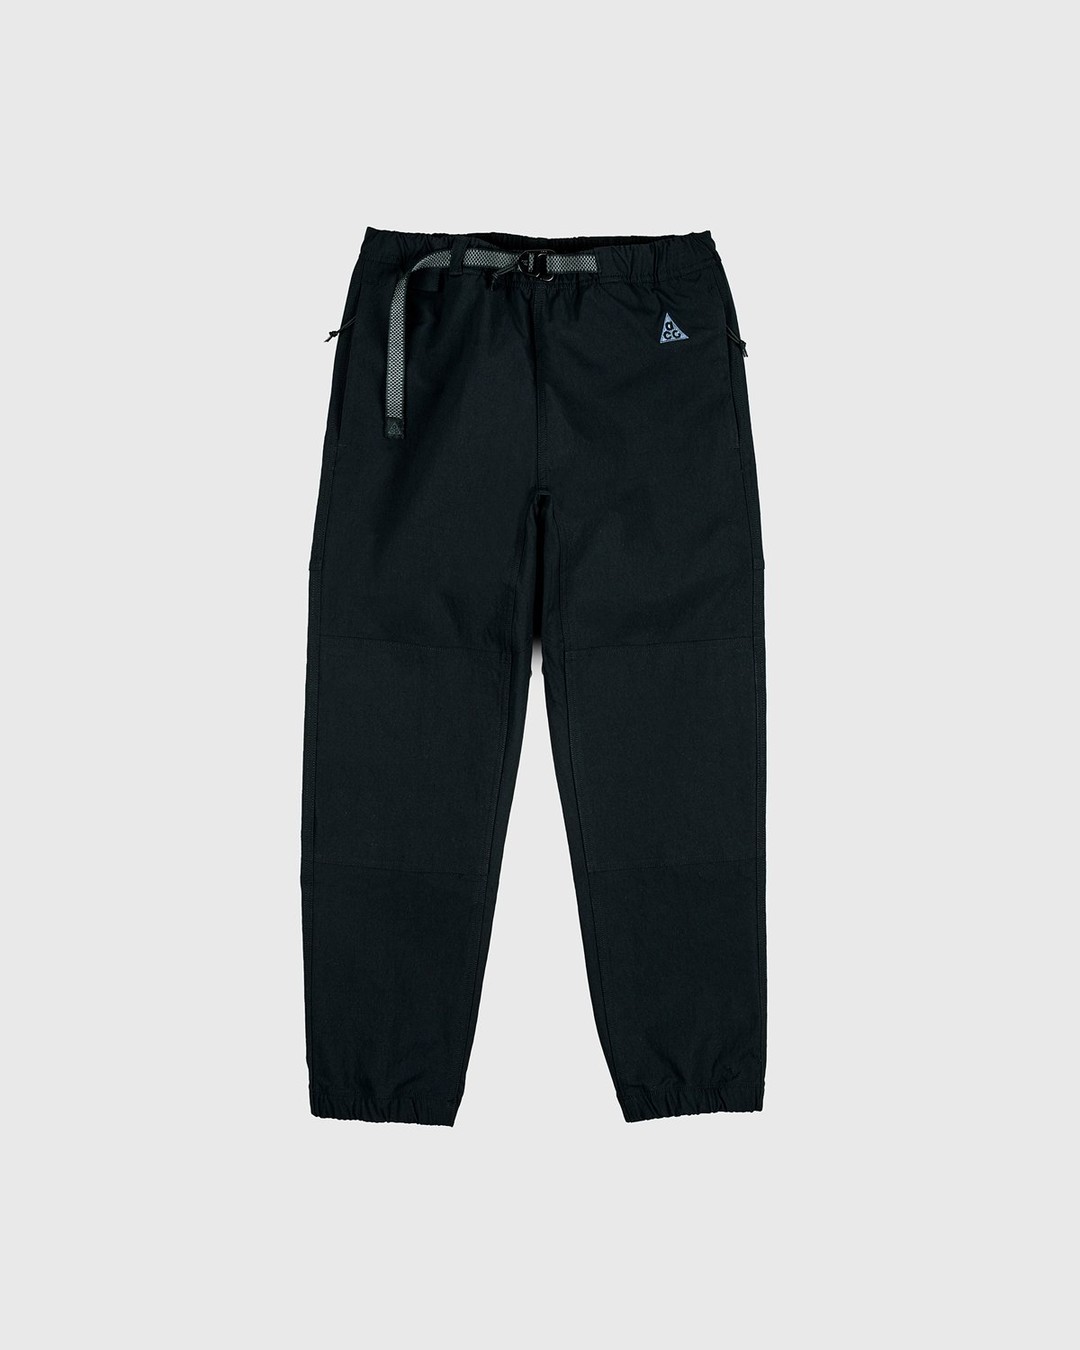 Nike ACG – M NRG ACG Trail Pant Black - Pants - Black - Image 1